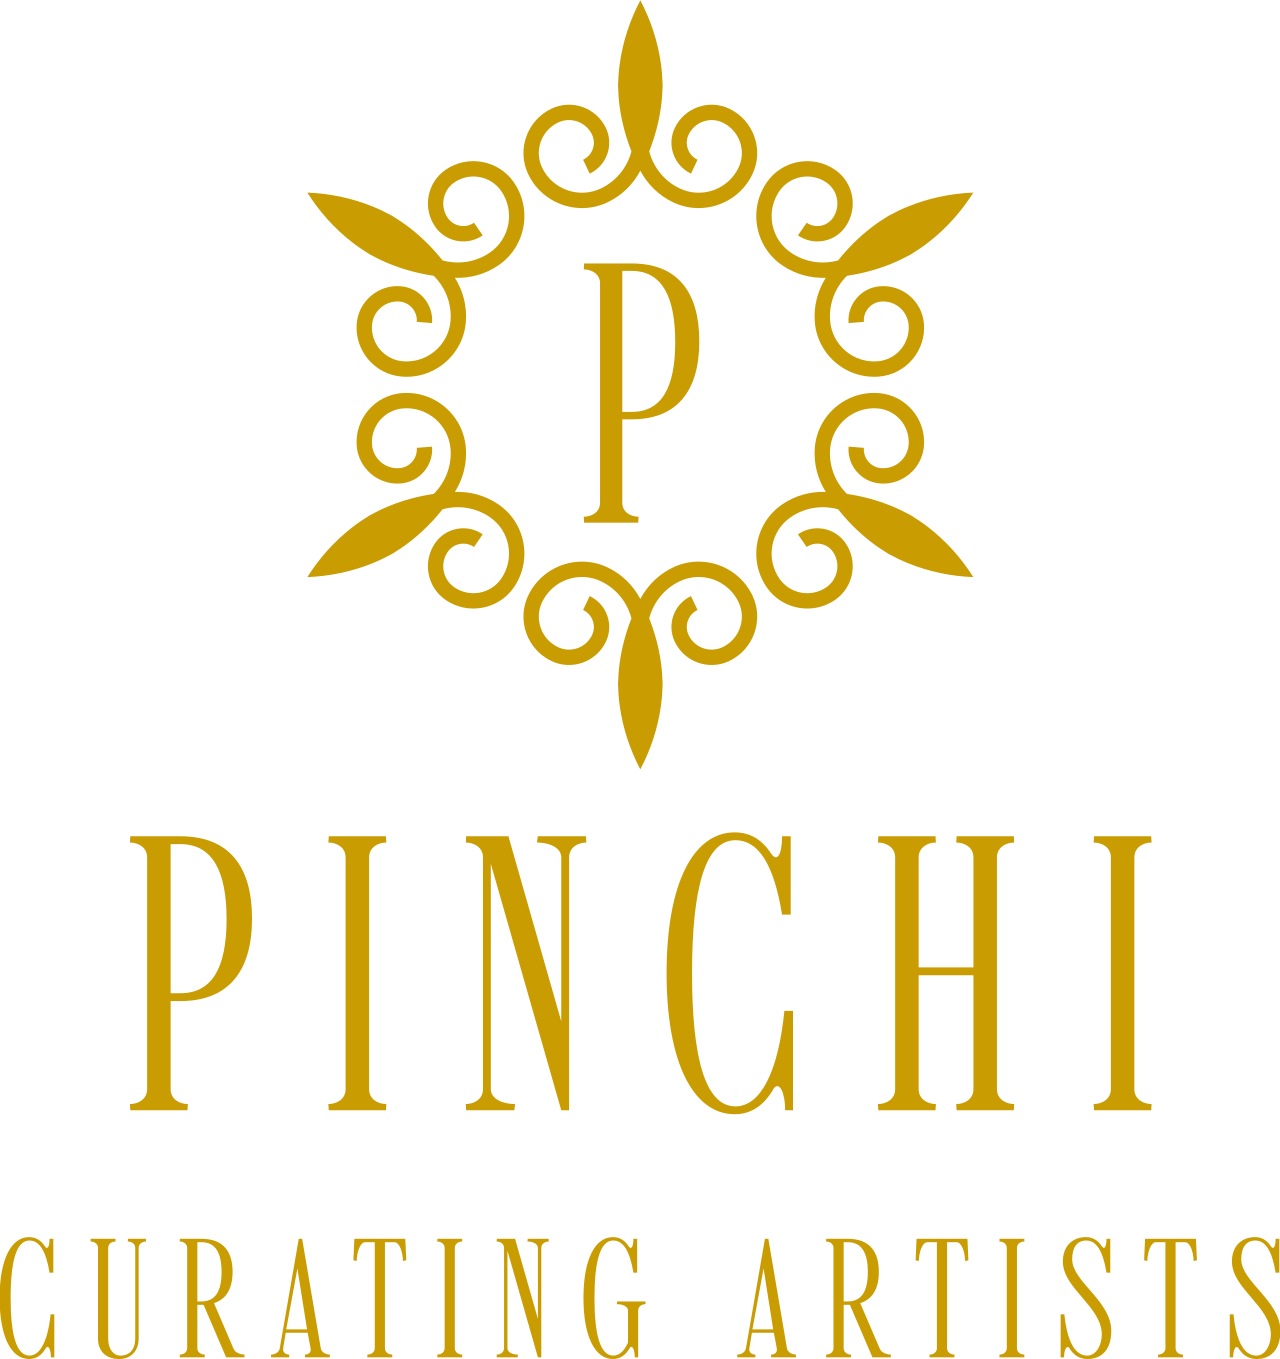 Pinchi's logo